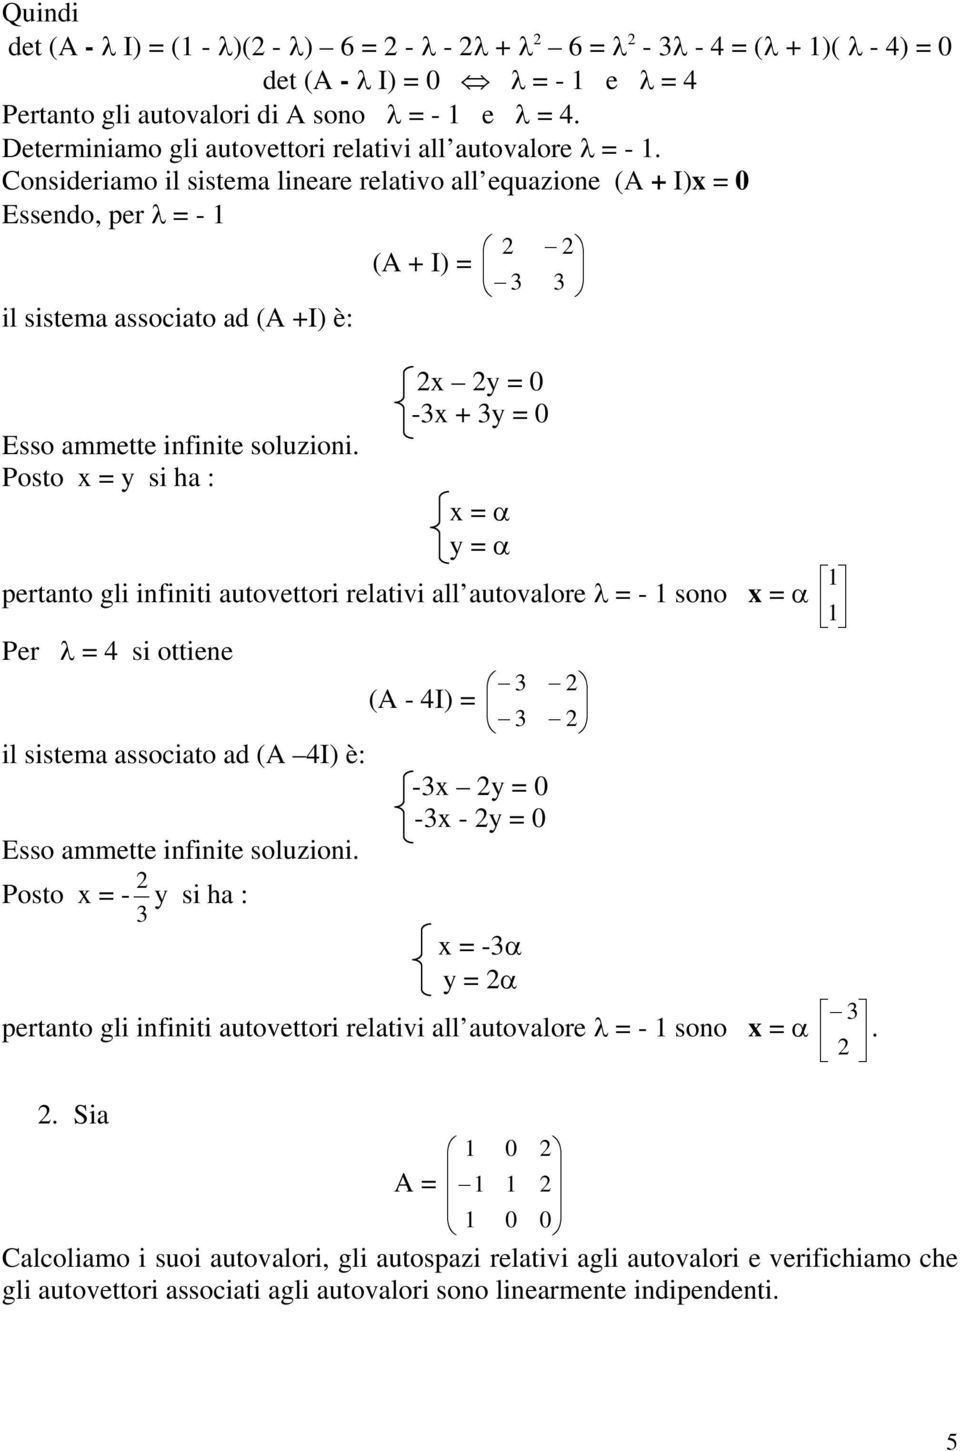 Posto x = y si h : x y = -3x + 3y = x = α y = α pertnto gli infiniti utovettori reltivi ll utovlore = - sono x = α Per = 4 si ottiene 3 (A - 4I) = 3 il sistem ssocito d (A 4I) è: -3x y = -3x - y =